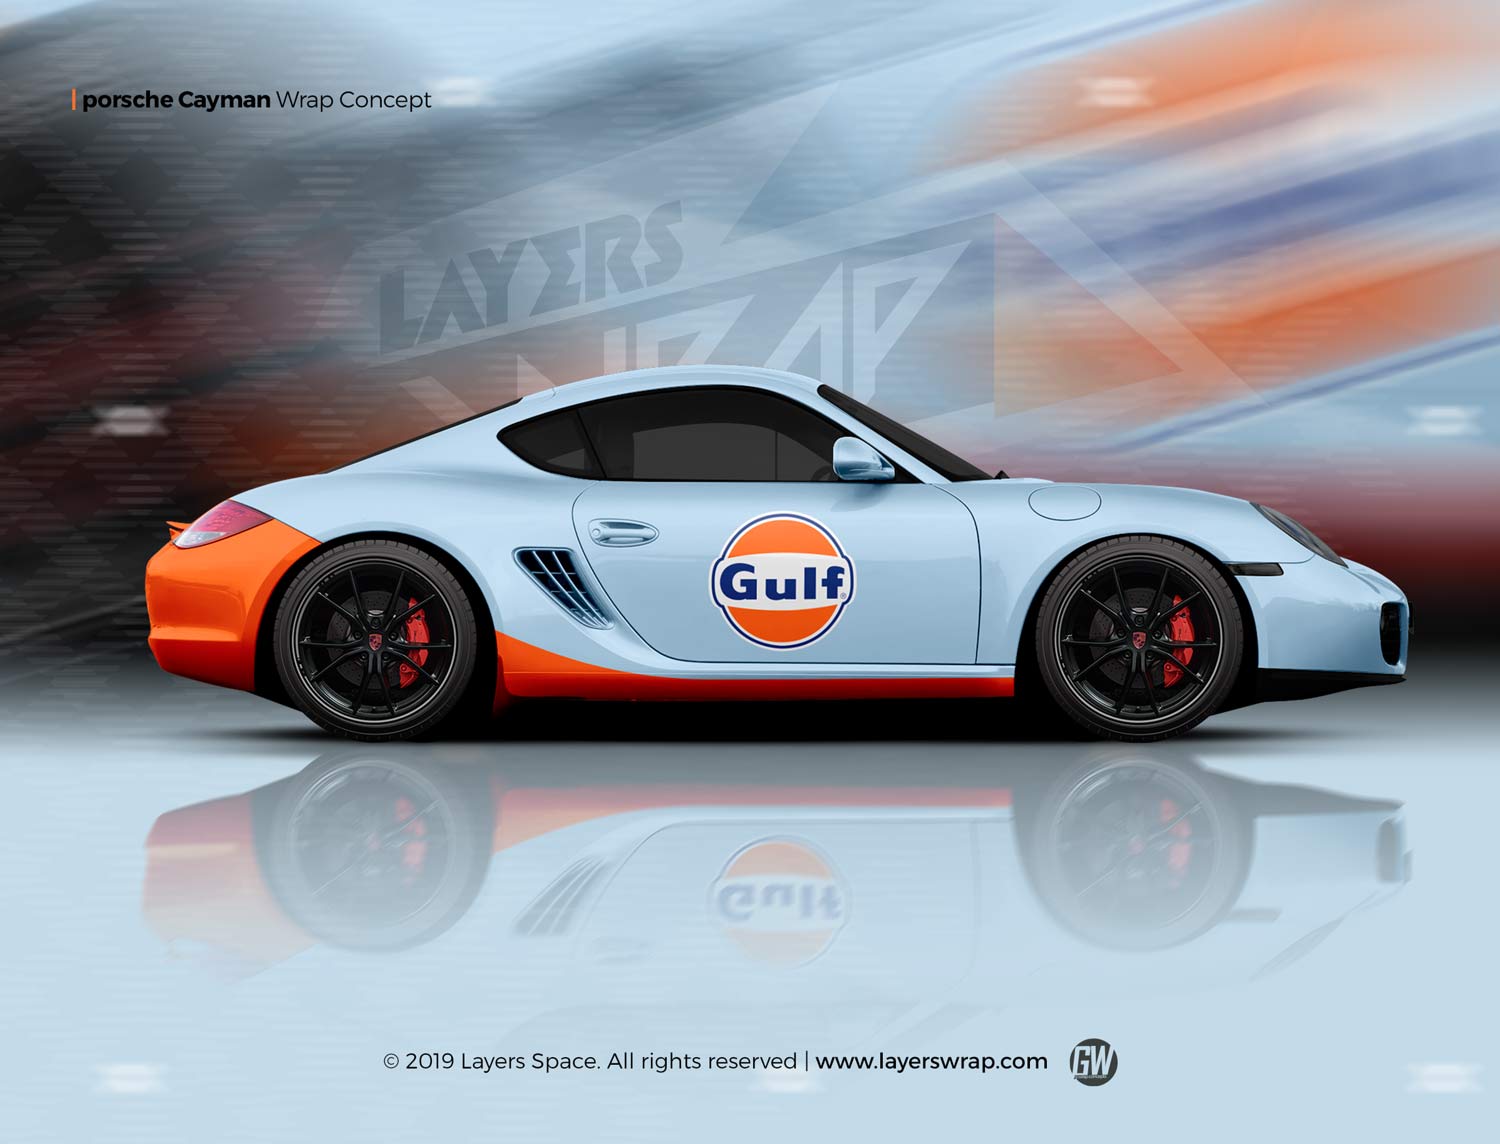 Gulf Branding on Porsche